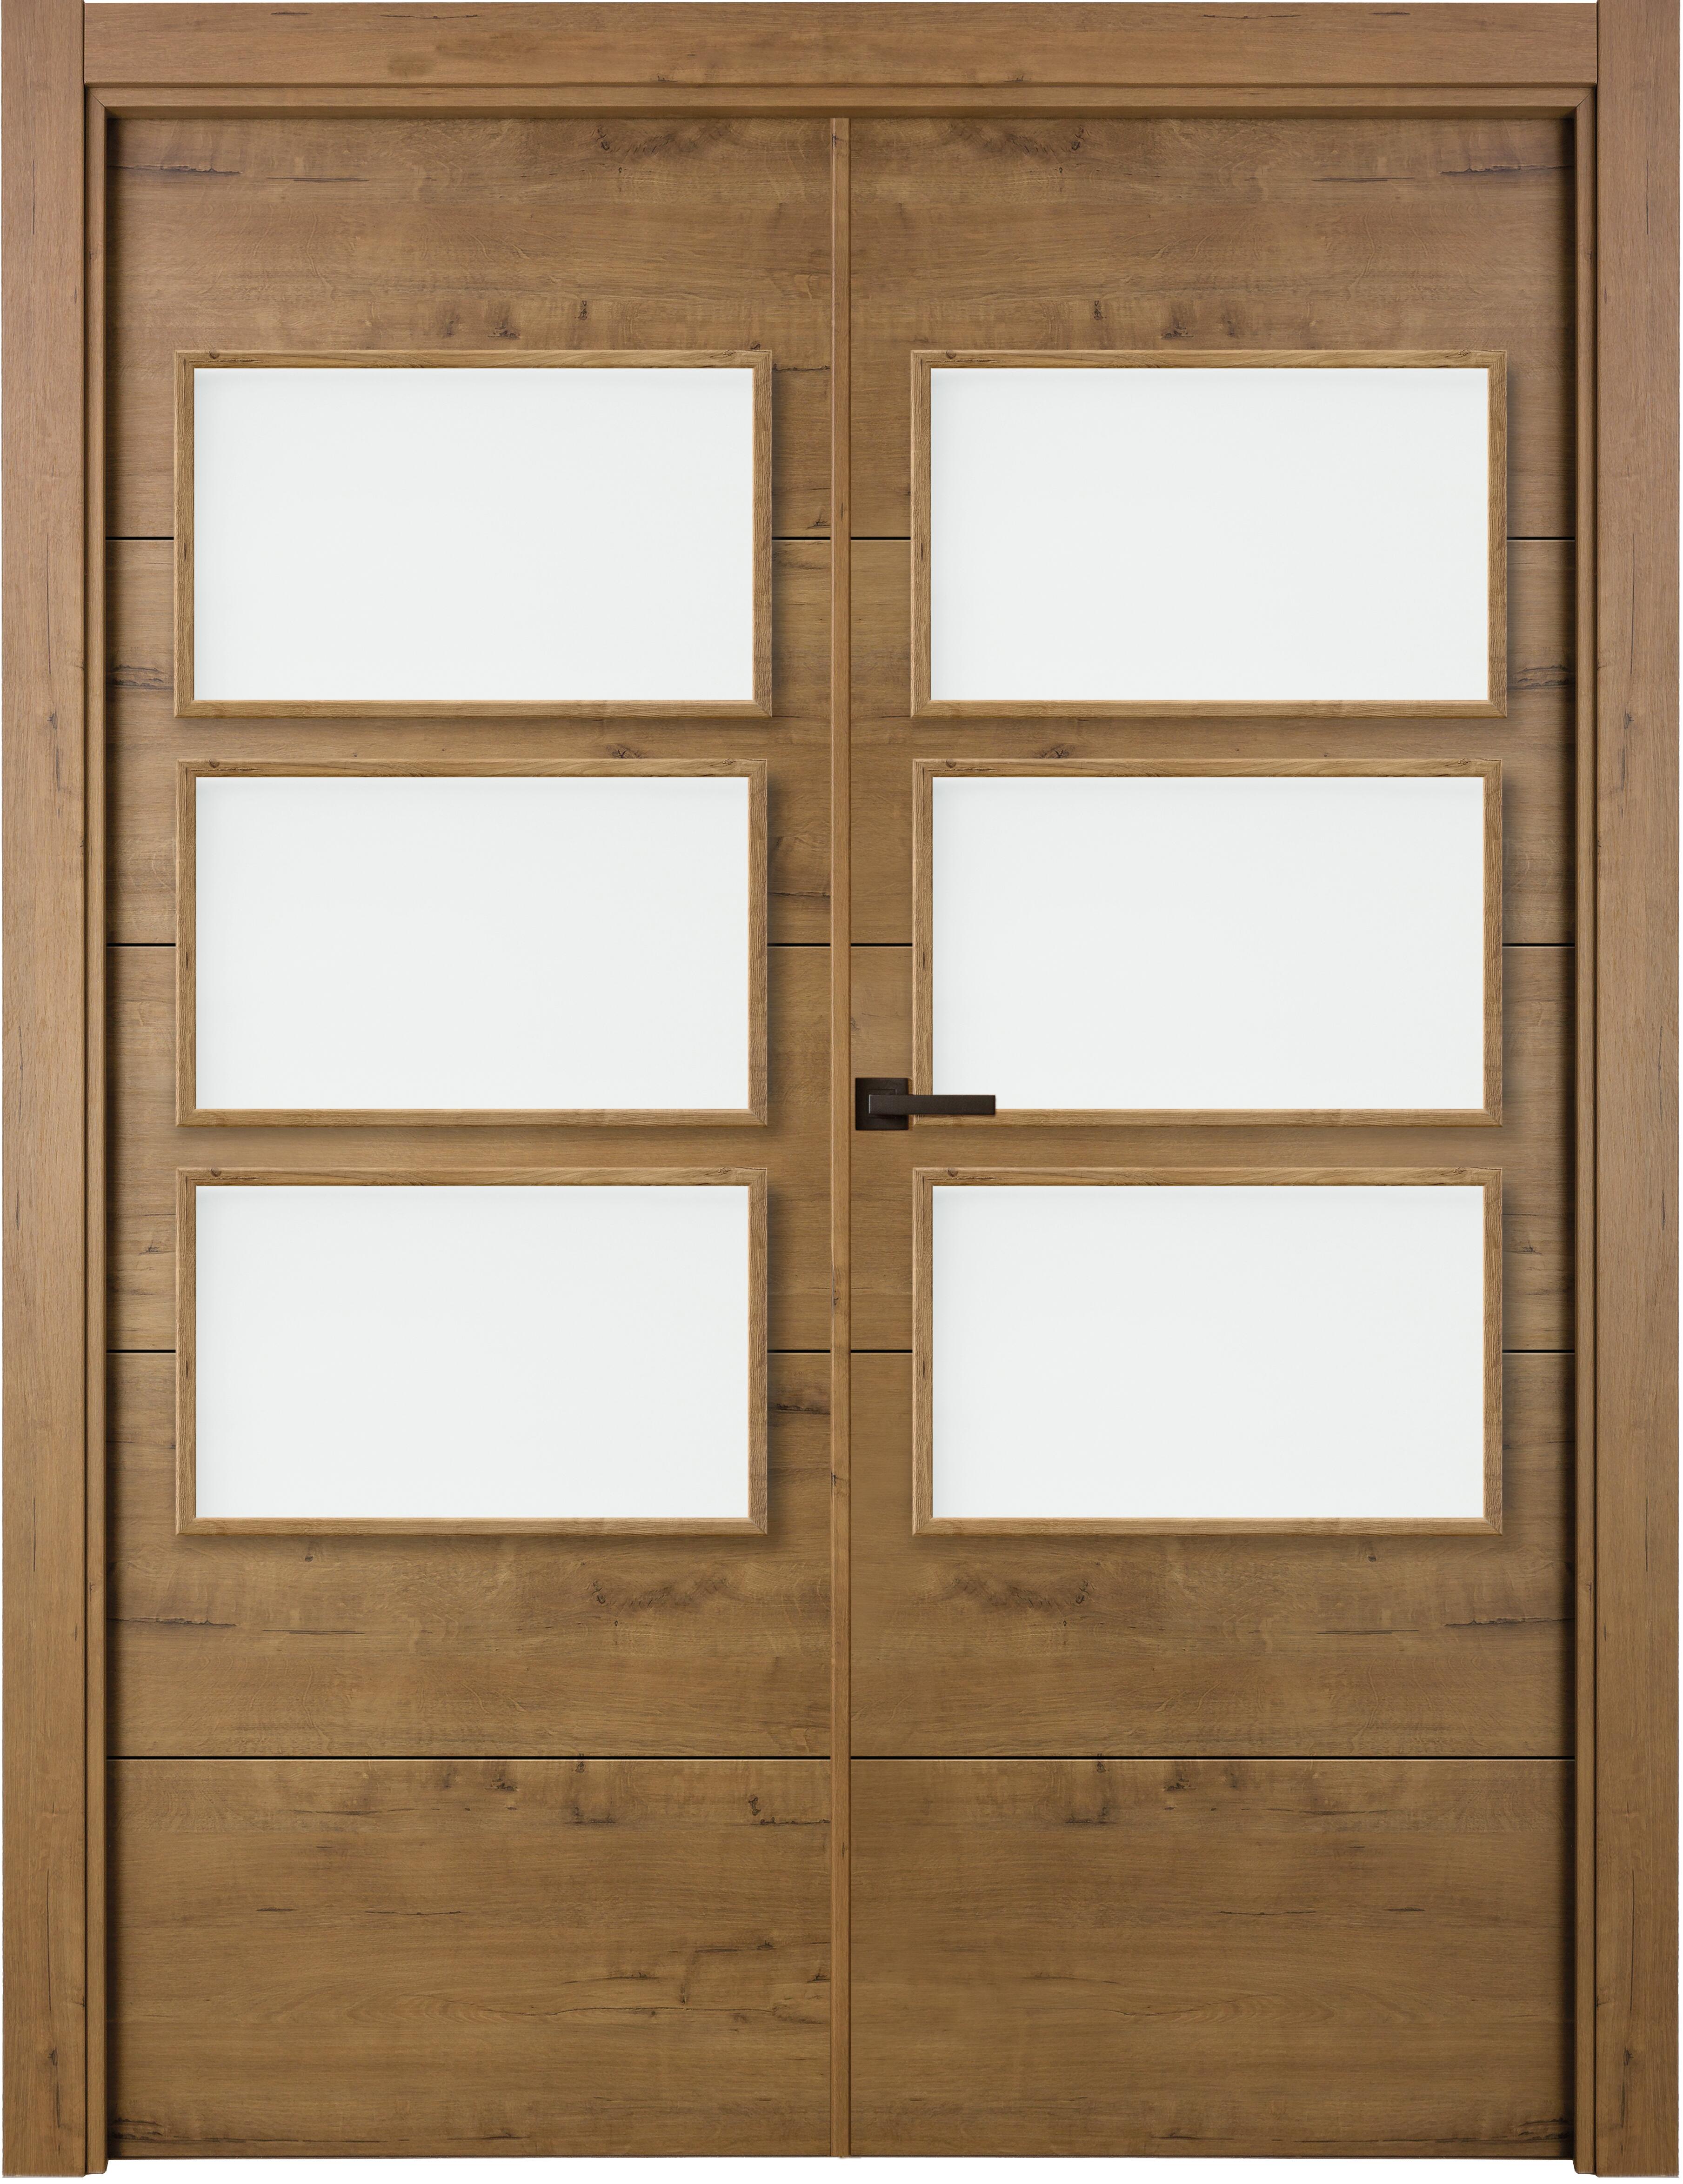 Puerta berna gold doble con vidriera de apertura derecha de 145 x 203 x 11 cm